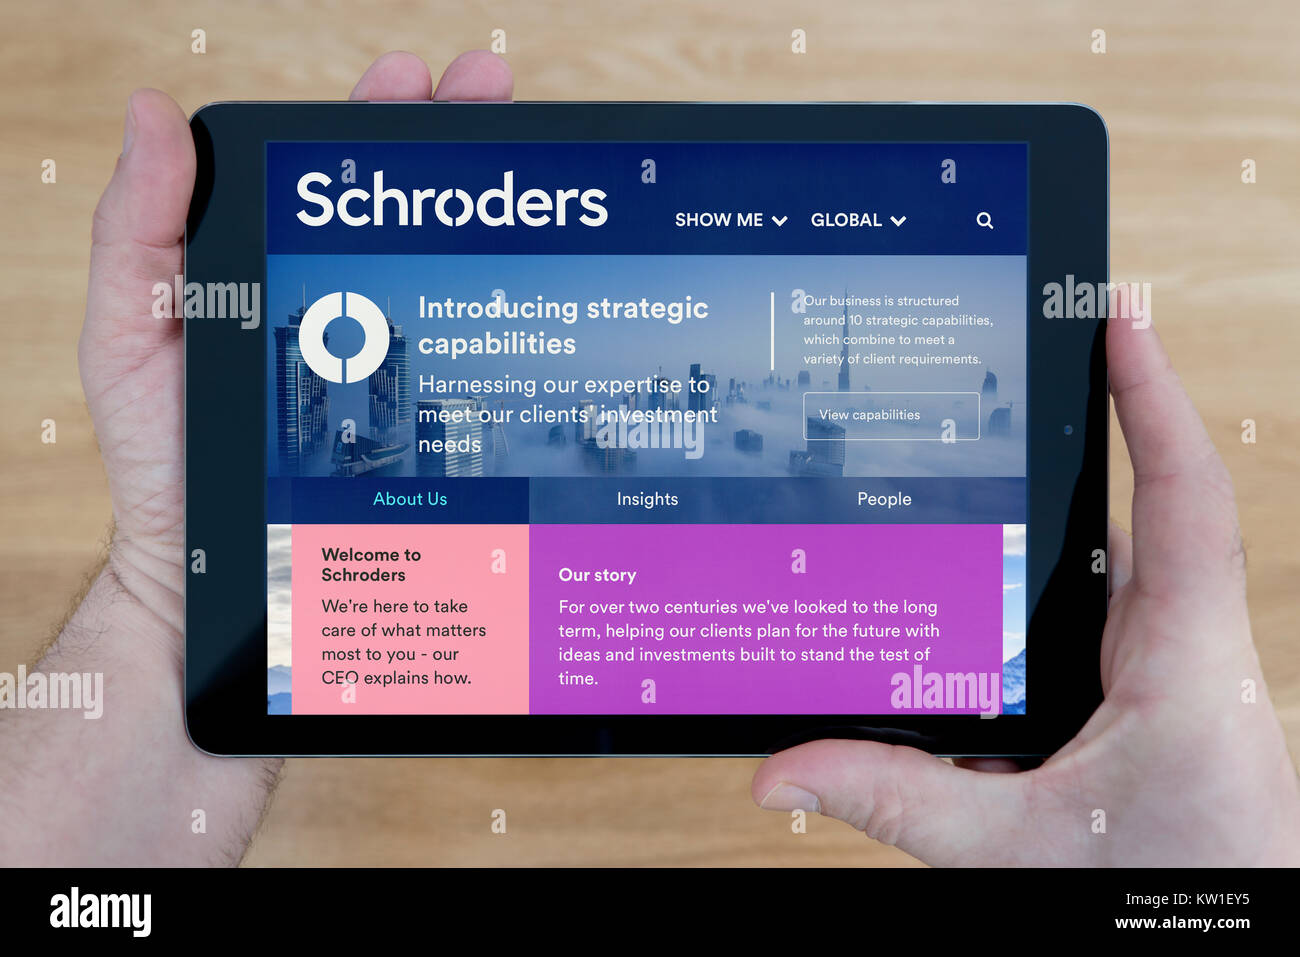 Ein Mann schaut auf die Website Schroders auf seinem iPad tablet device, Schuß gegen einen hölzernen Tisch top Hintergrund (nur redaktionelle Nutzung) Stockfoto